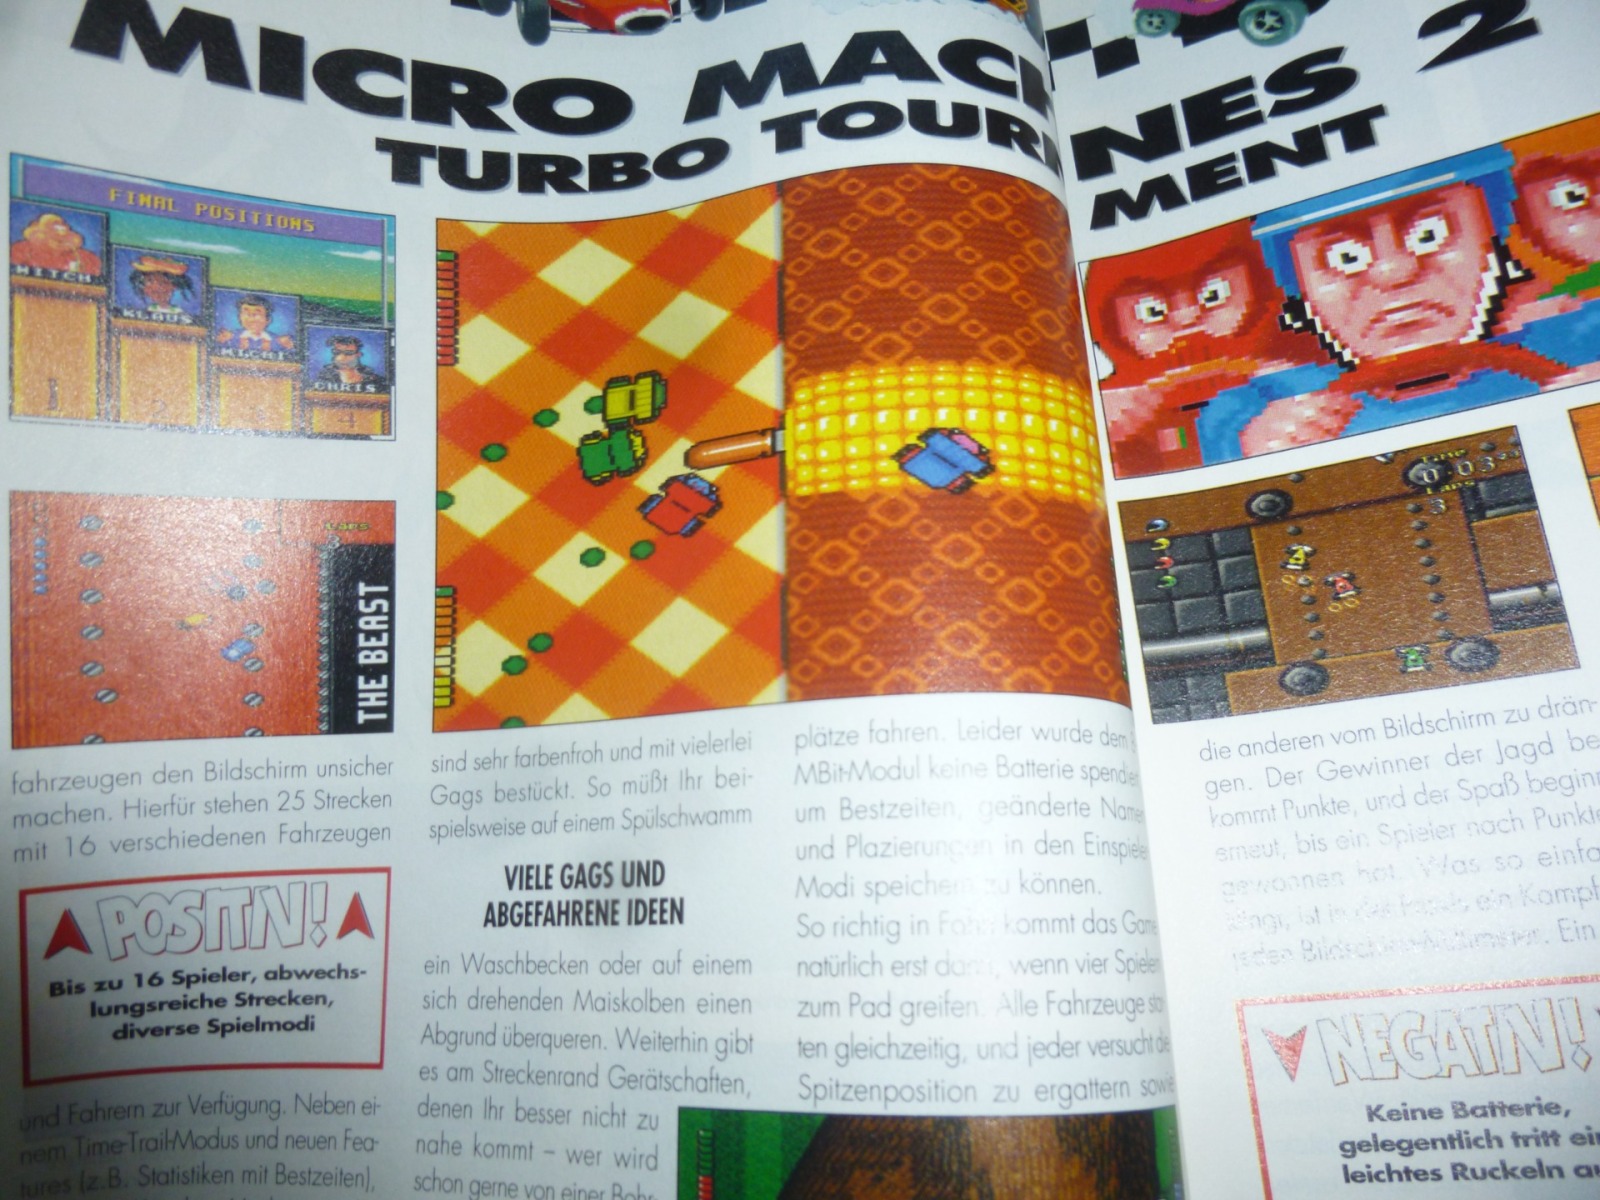 TOTAL Das unabhängige Magazin - 100 Nintendo - Ausgabe 2/96 1996 10